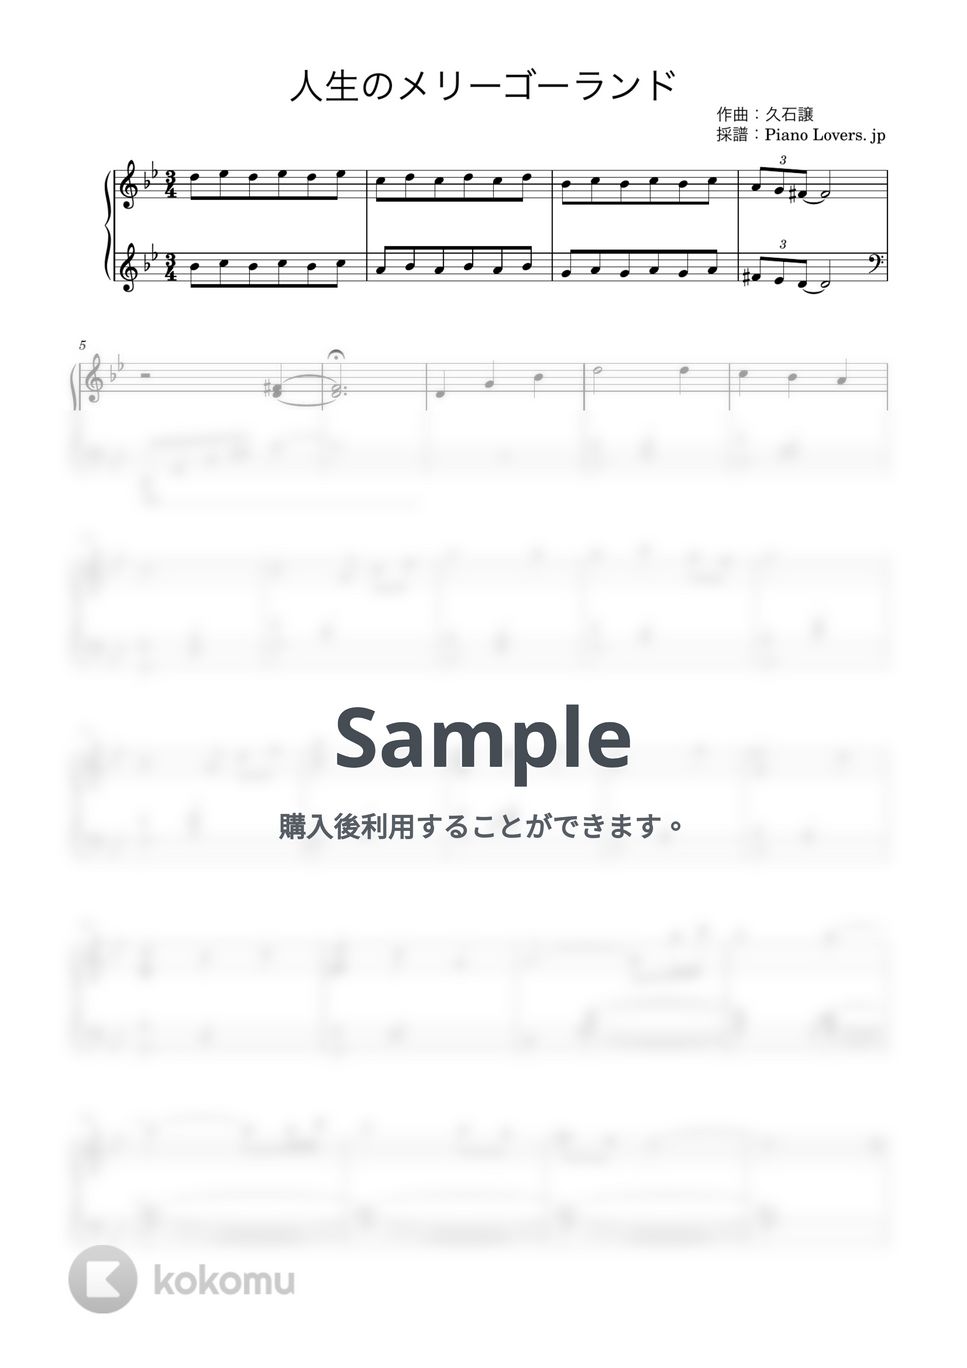 久石譲 - 人生のメリーゴーランド (ハウルの動く城 / ピアノ楽譜 / 中級) by Piano Lovers. jp